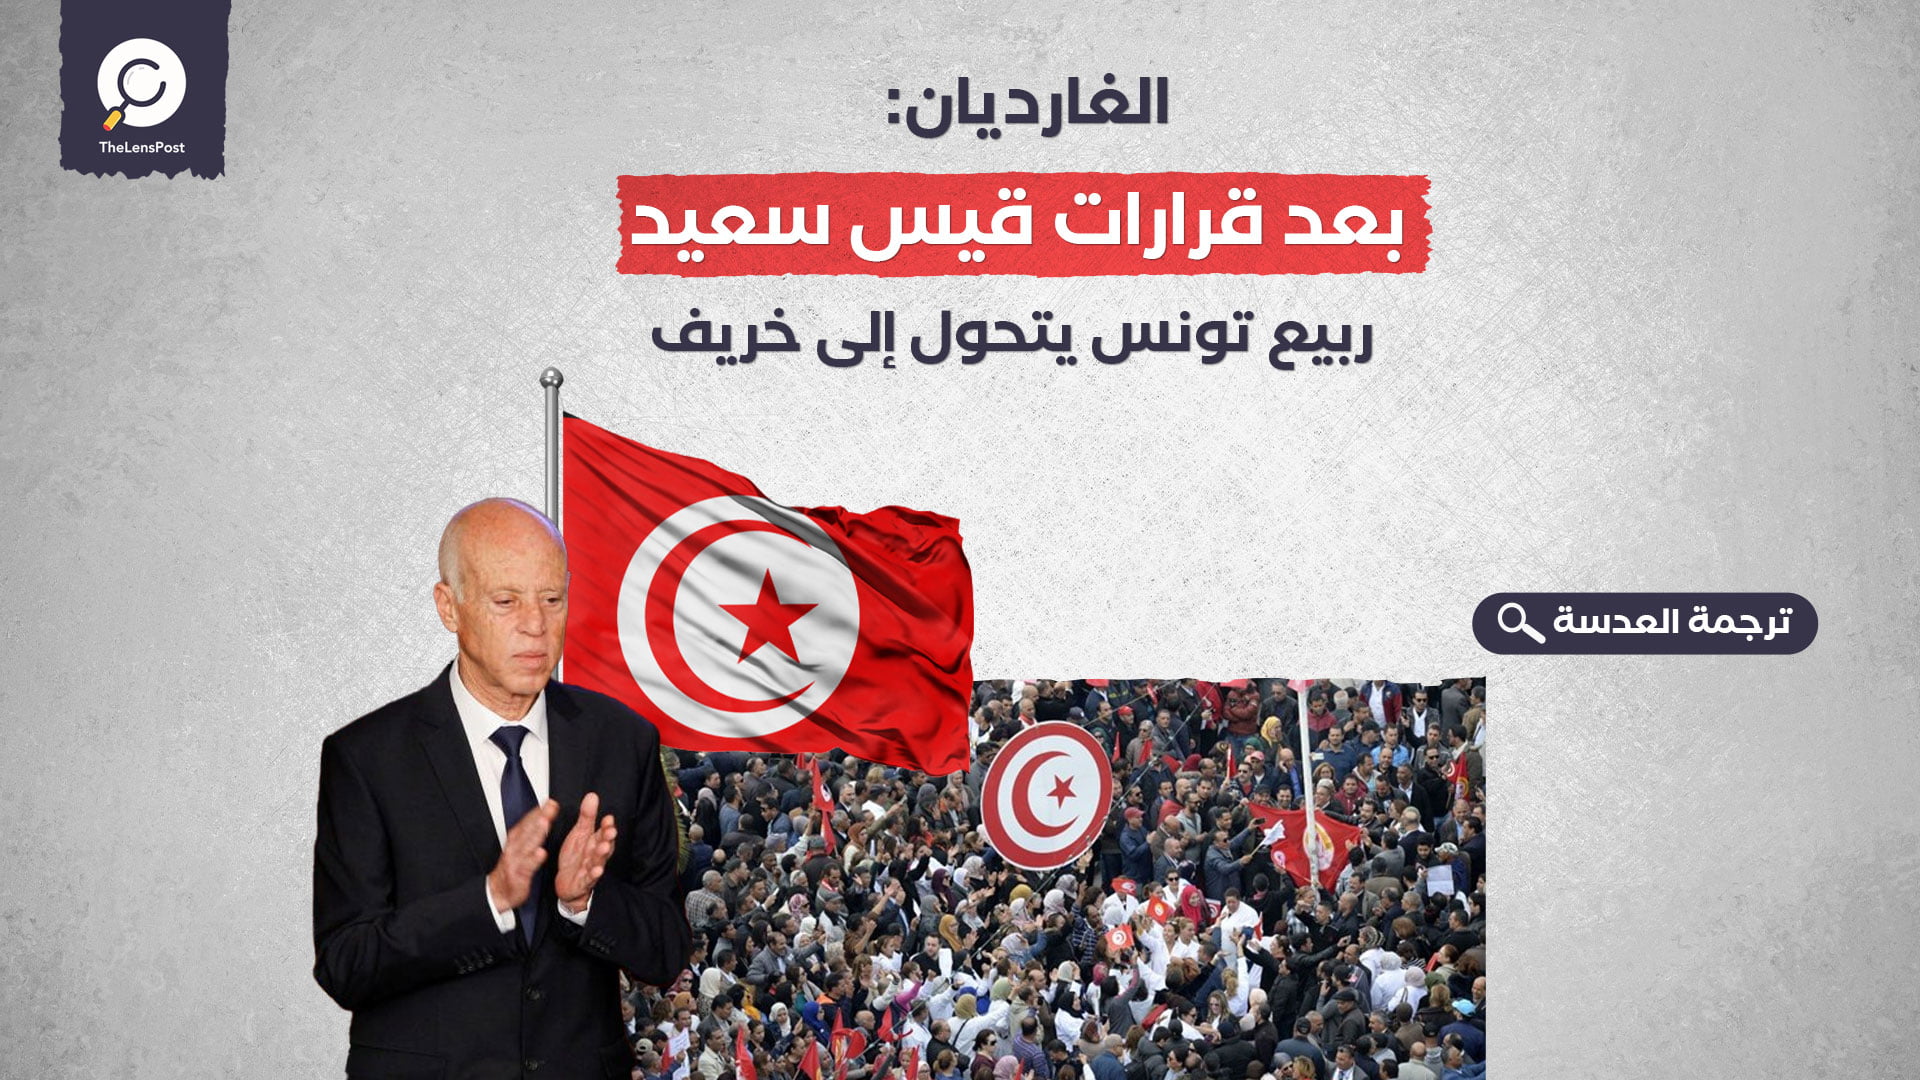 الغارديان: بعد قرارات قيس سعيد... ربيع تونس يتحول إلى خريف